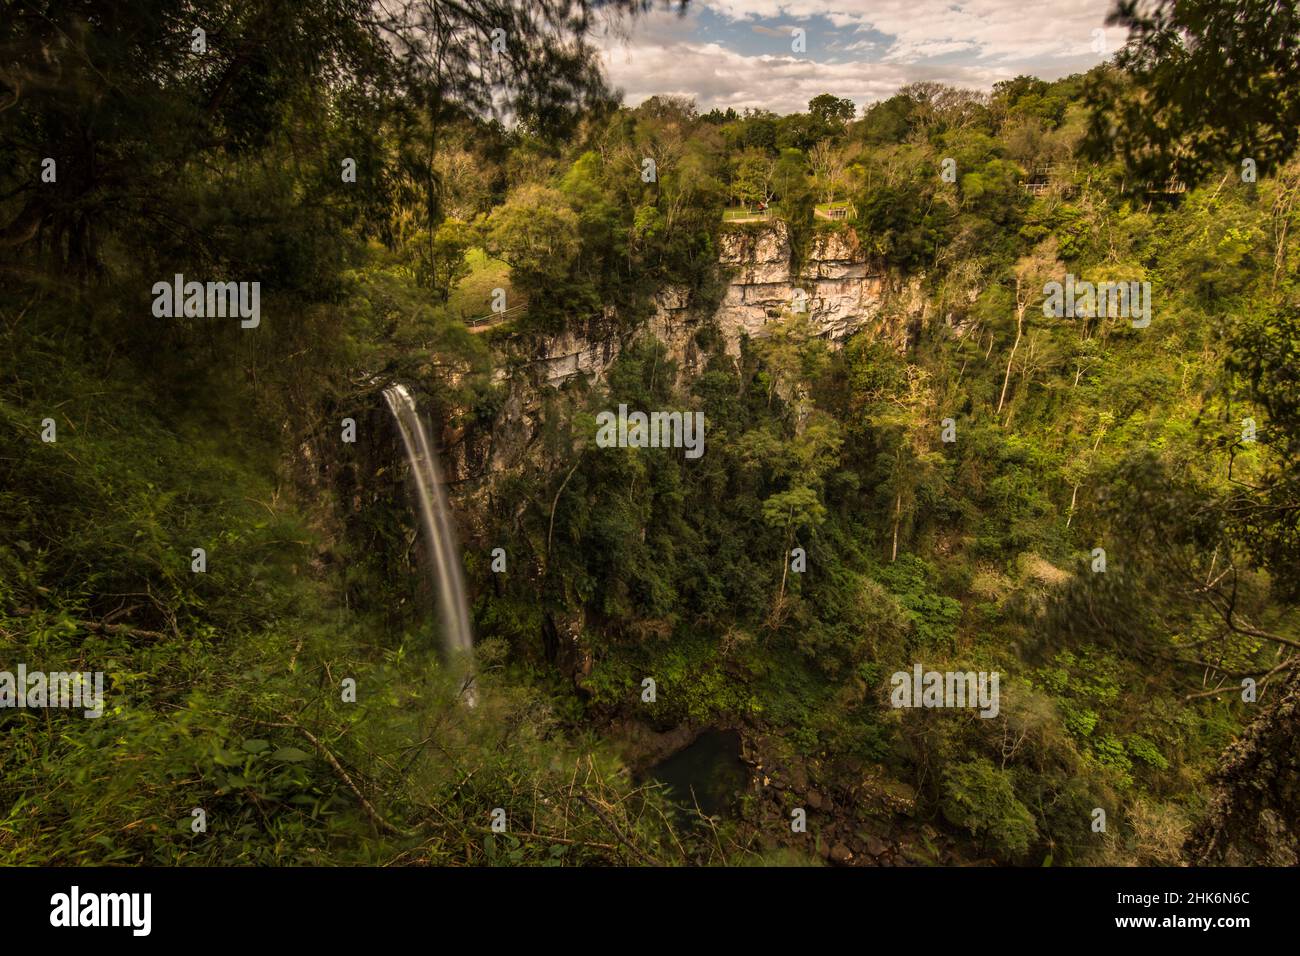 Wassertropfen im Nationalpark Salto Encantado, genannt Salto Encantado (entzückt) zwischen dem Dschungelwald in Aristobulo del Valle, Misiones, Argent Stockfoto